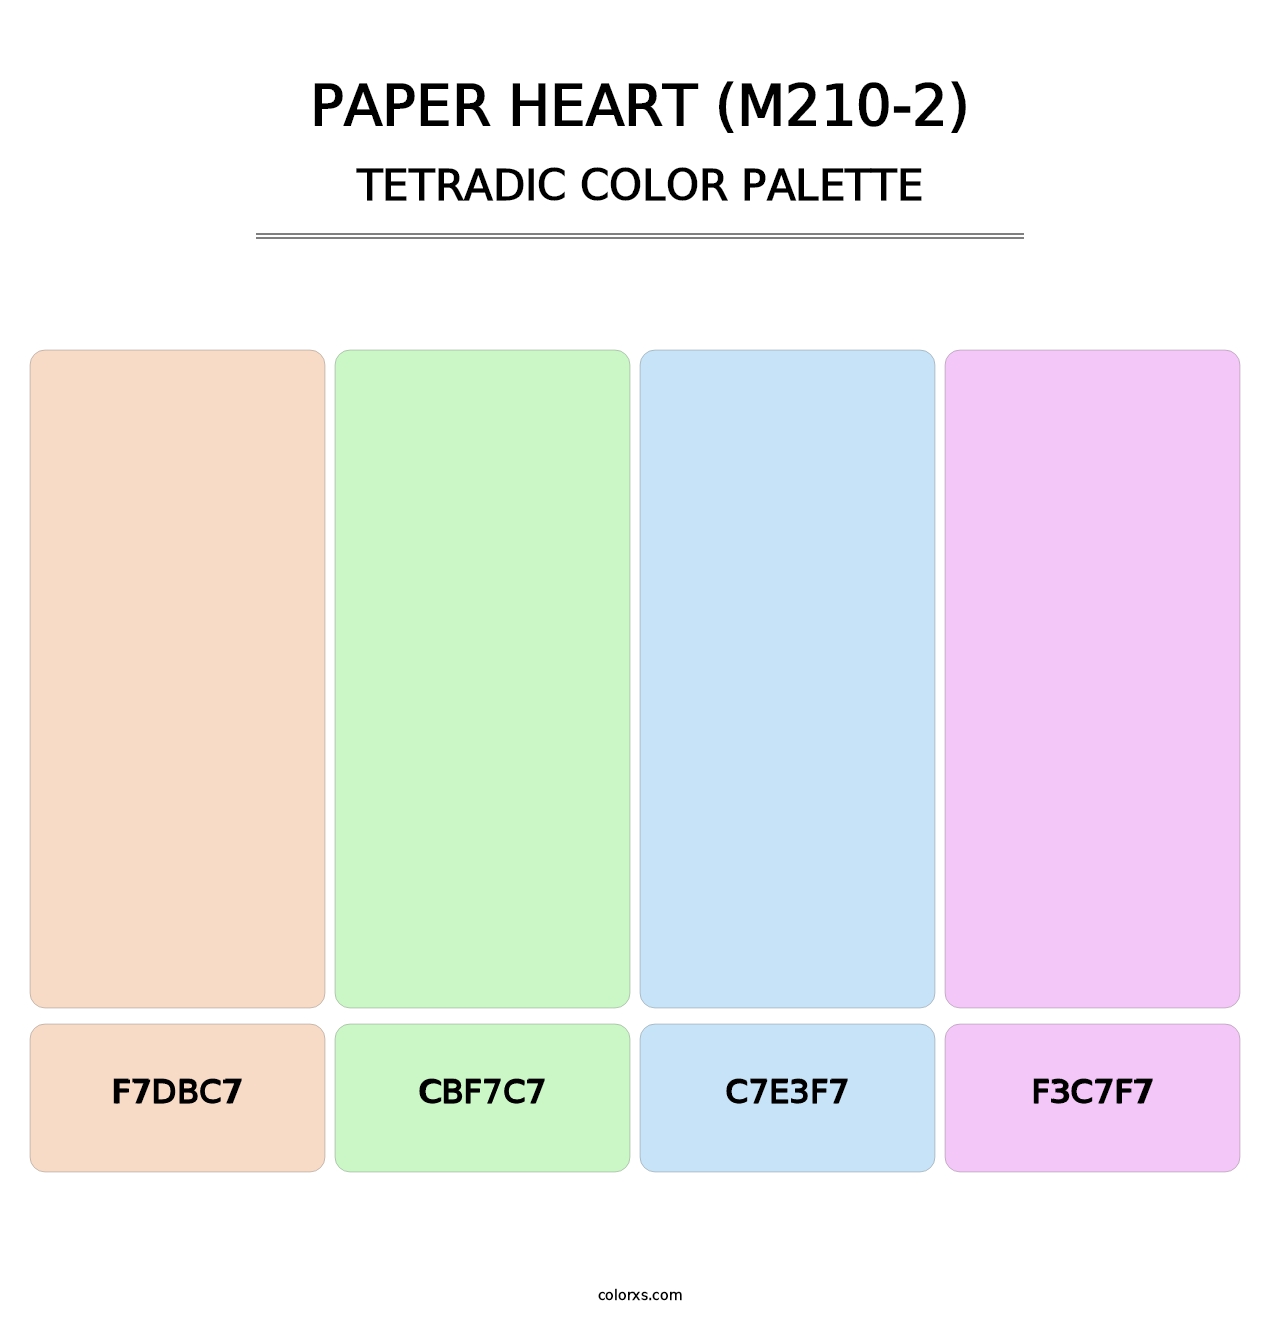 Paper Heart (M210-2) - Tetradic Color Palette